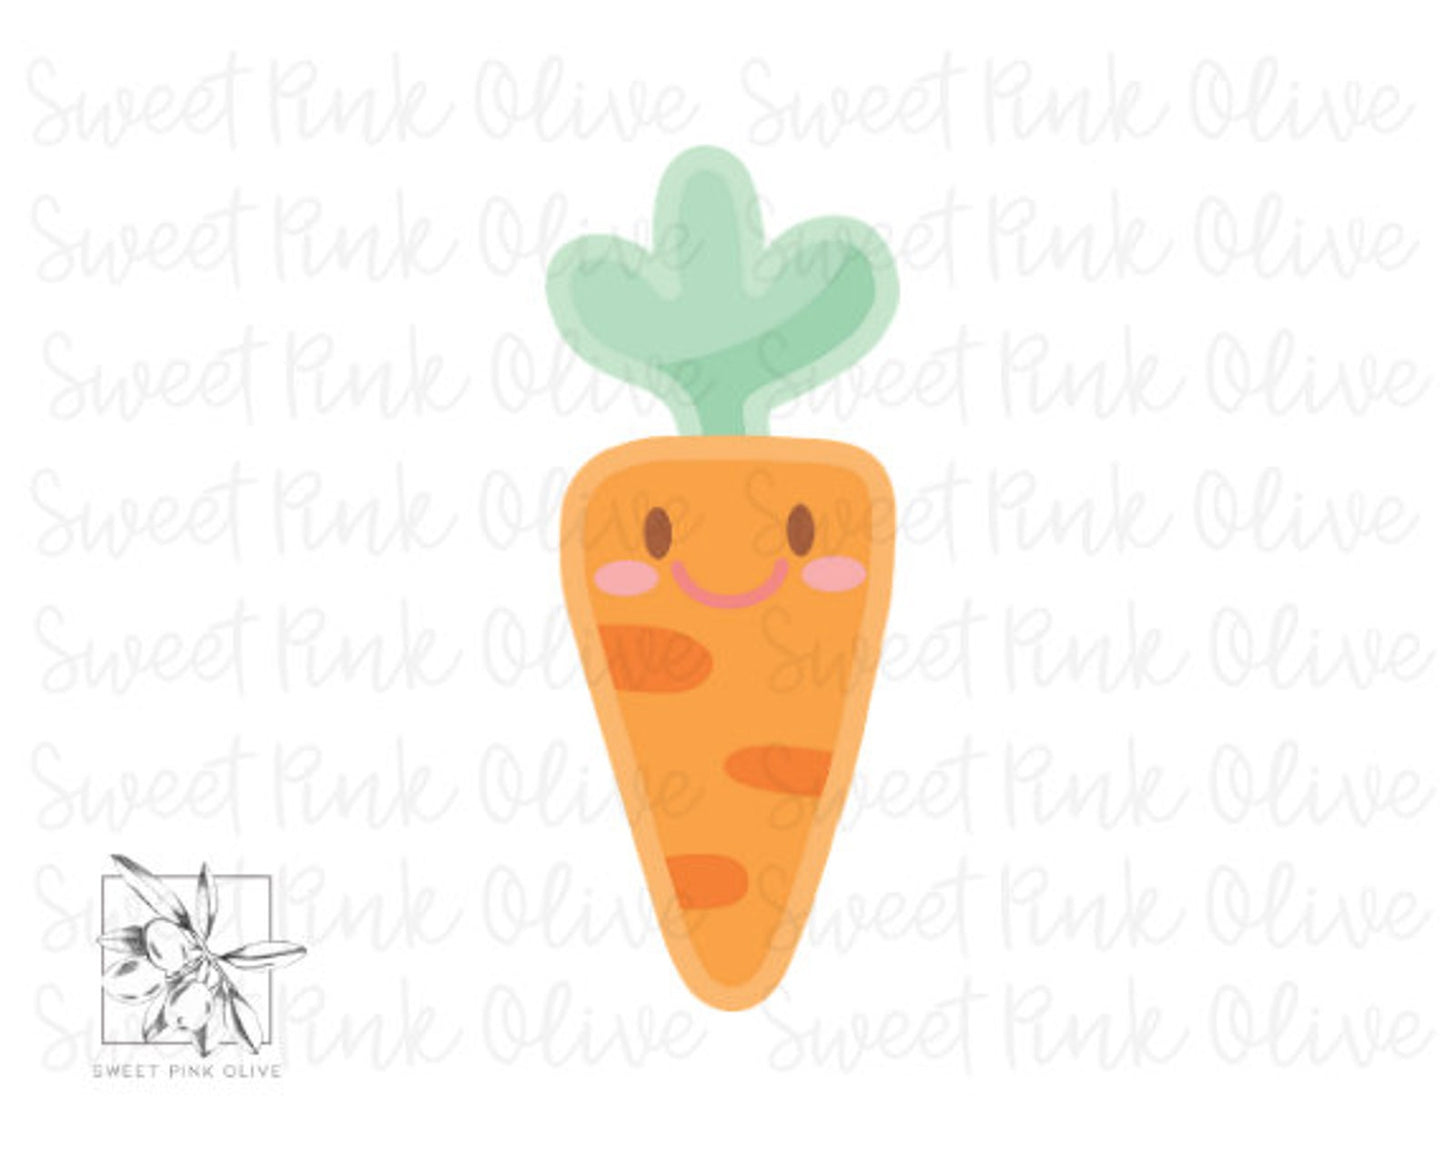 Carrot 2